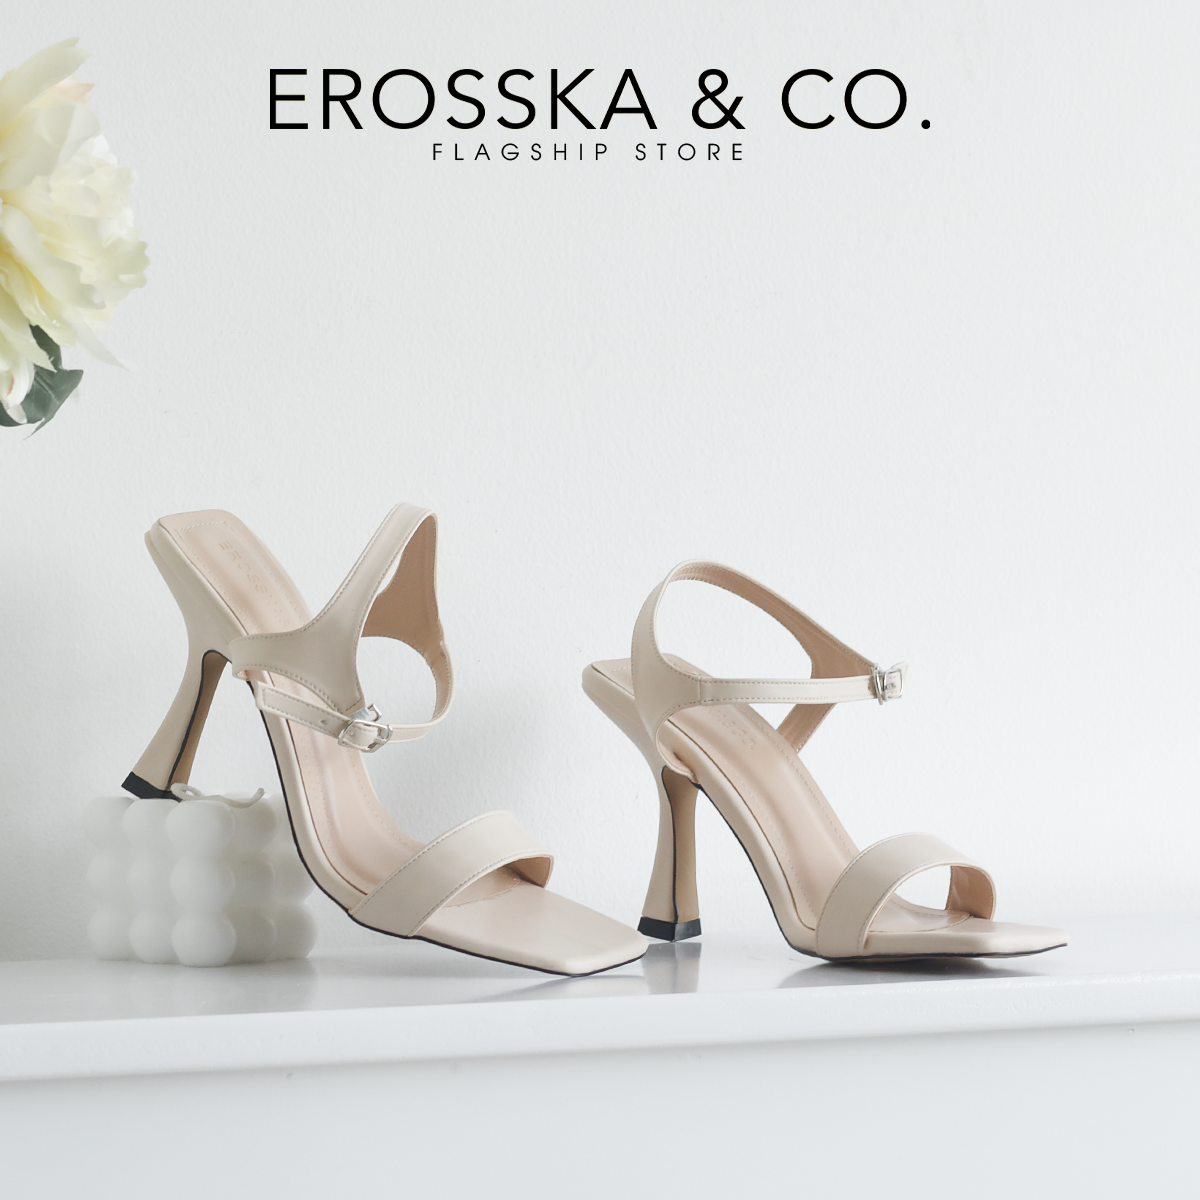 [Form nhỏ tăng 1 size] Erosska - Giày sandal cao gót nữ mũi hở gót nhọn phối dây quai mảnh cao 9cm - EB058